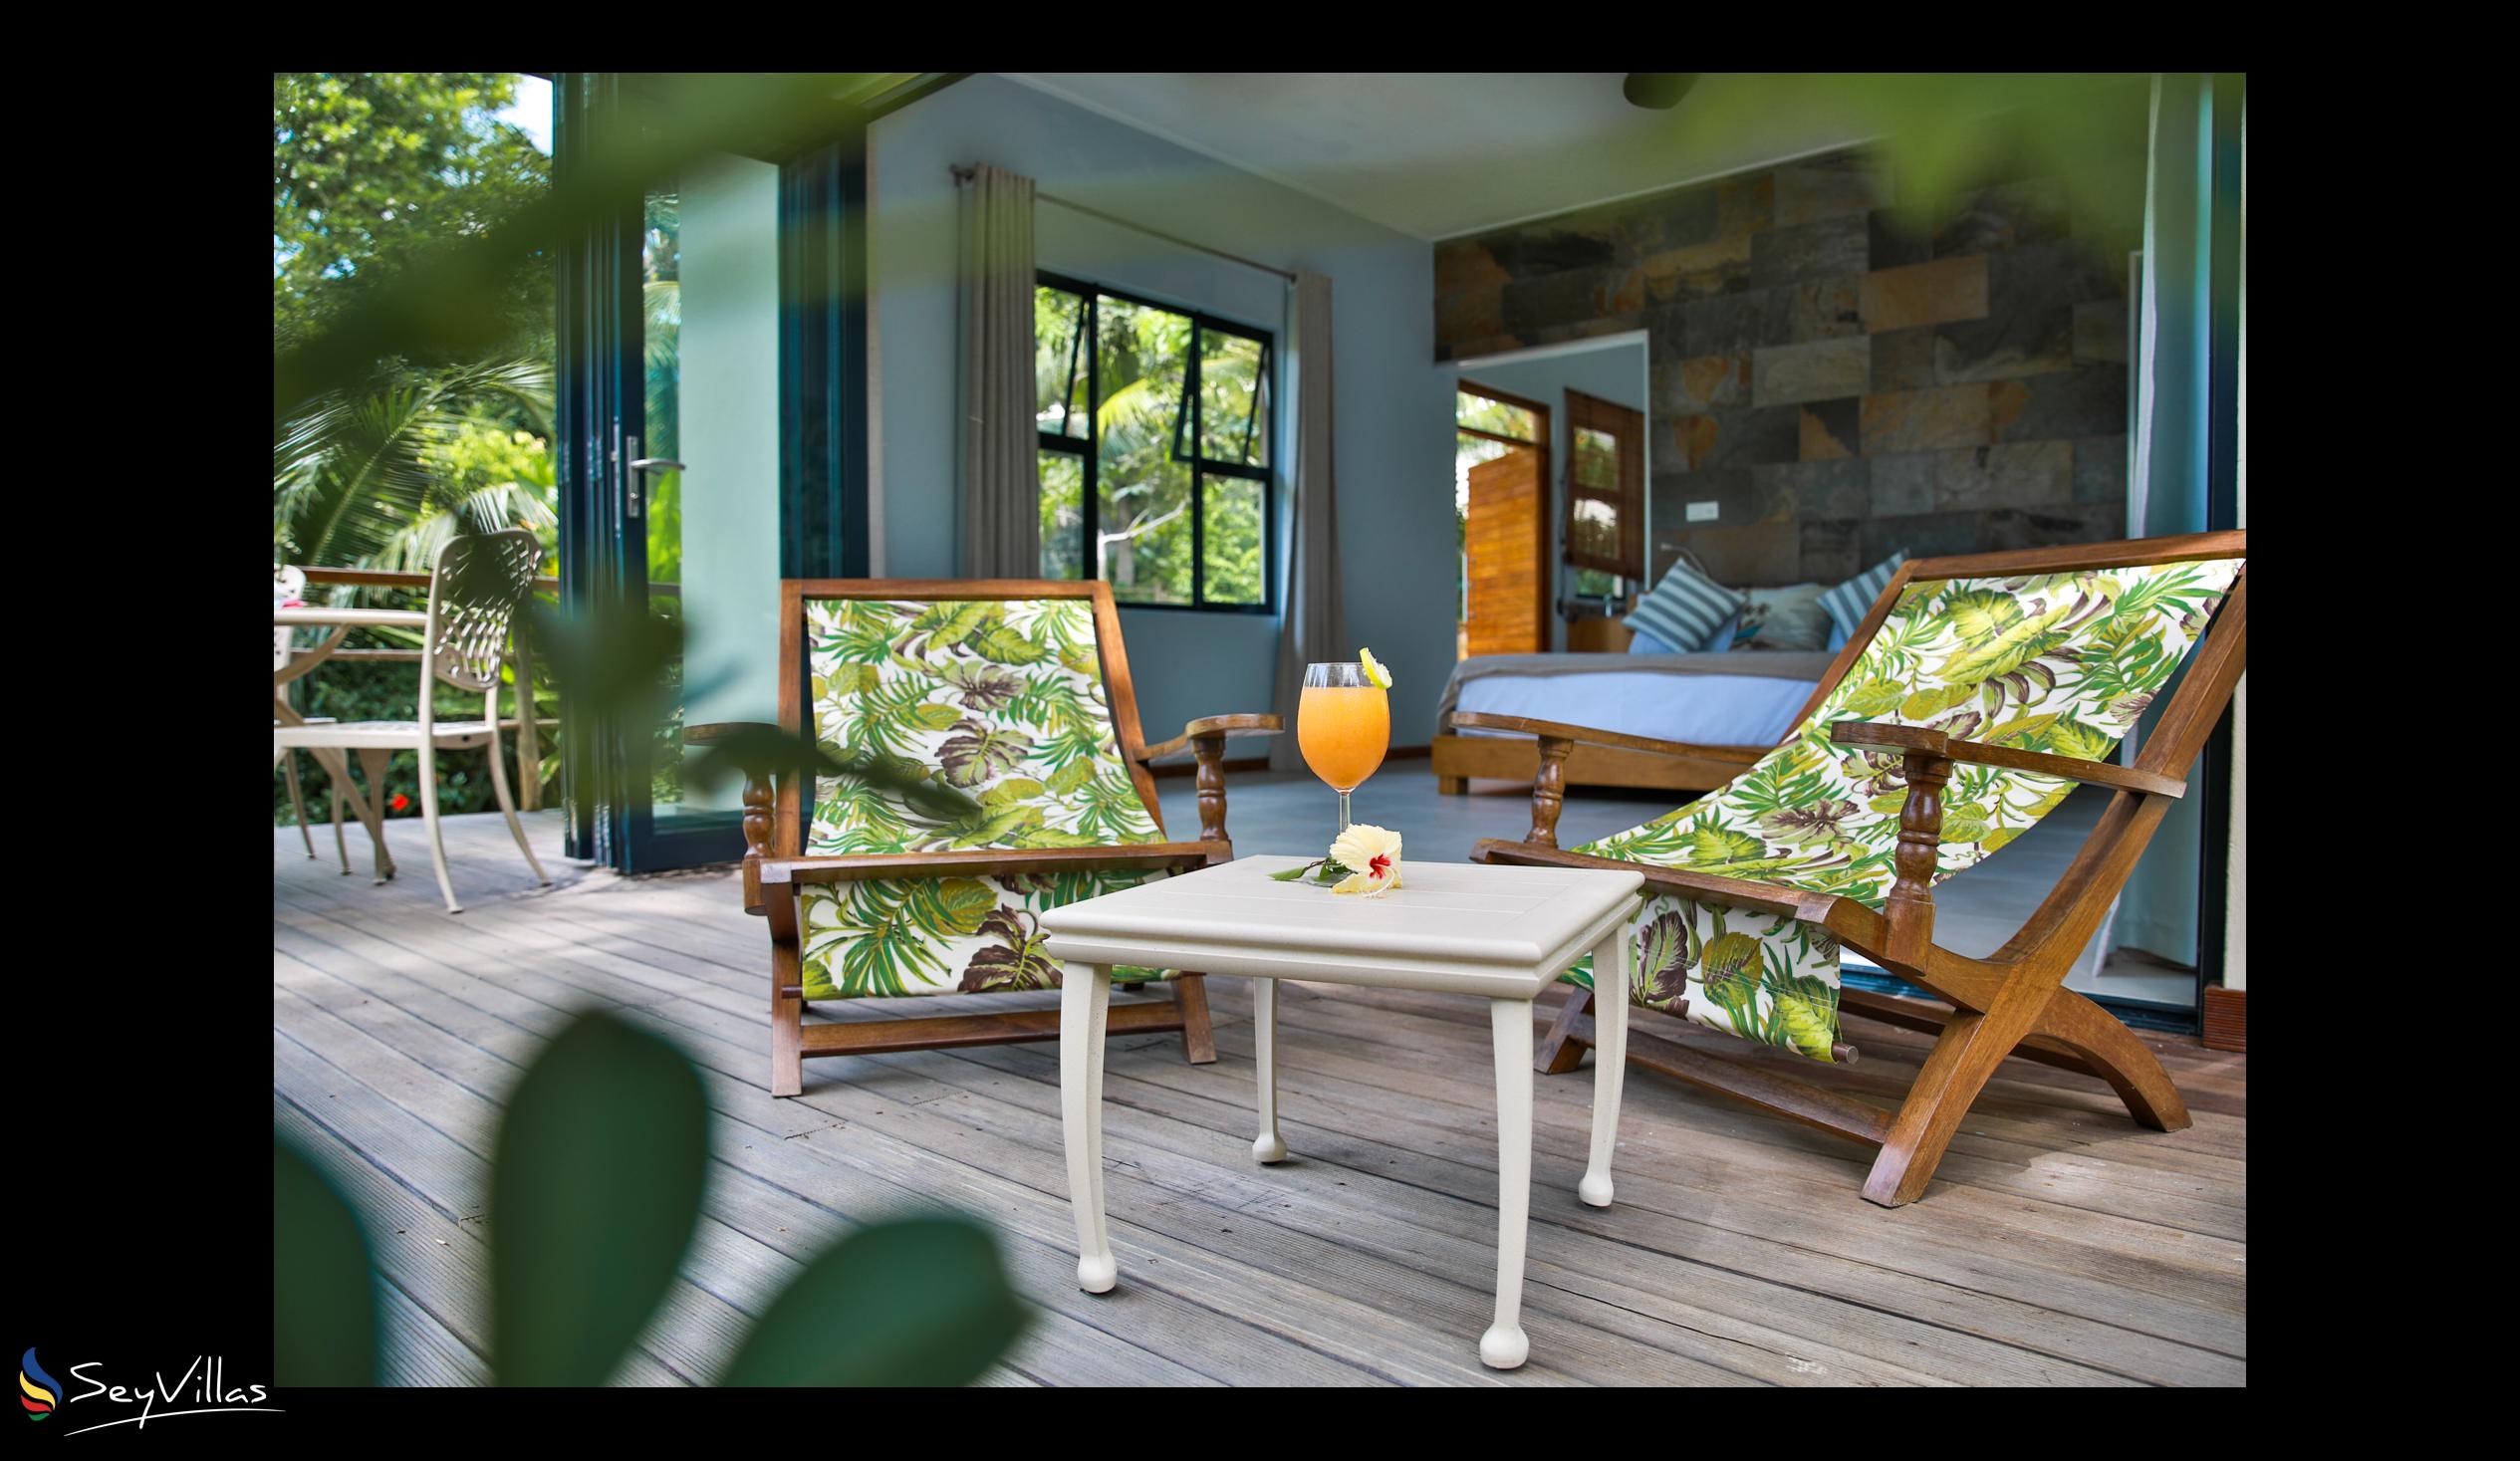 Photo 21: Domaine Desaubin Luxury Villas - Outdoor area - Mahé (Seychelles)